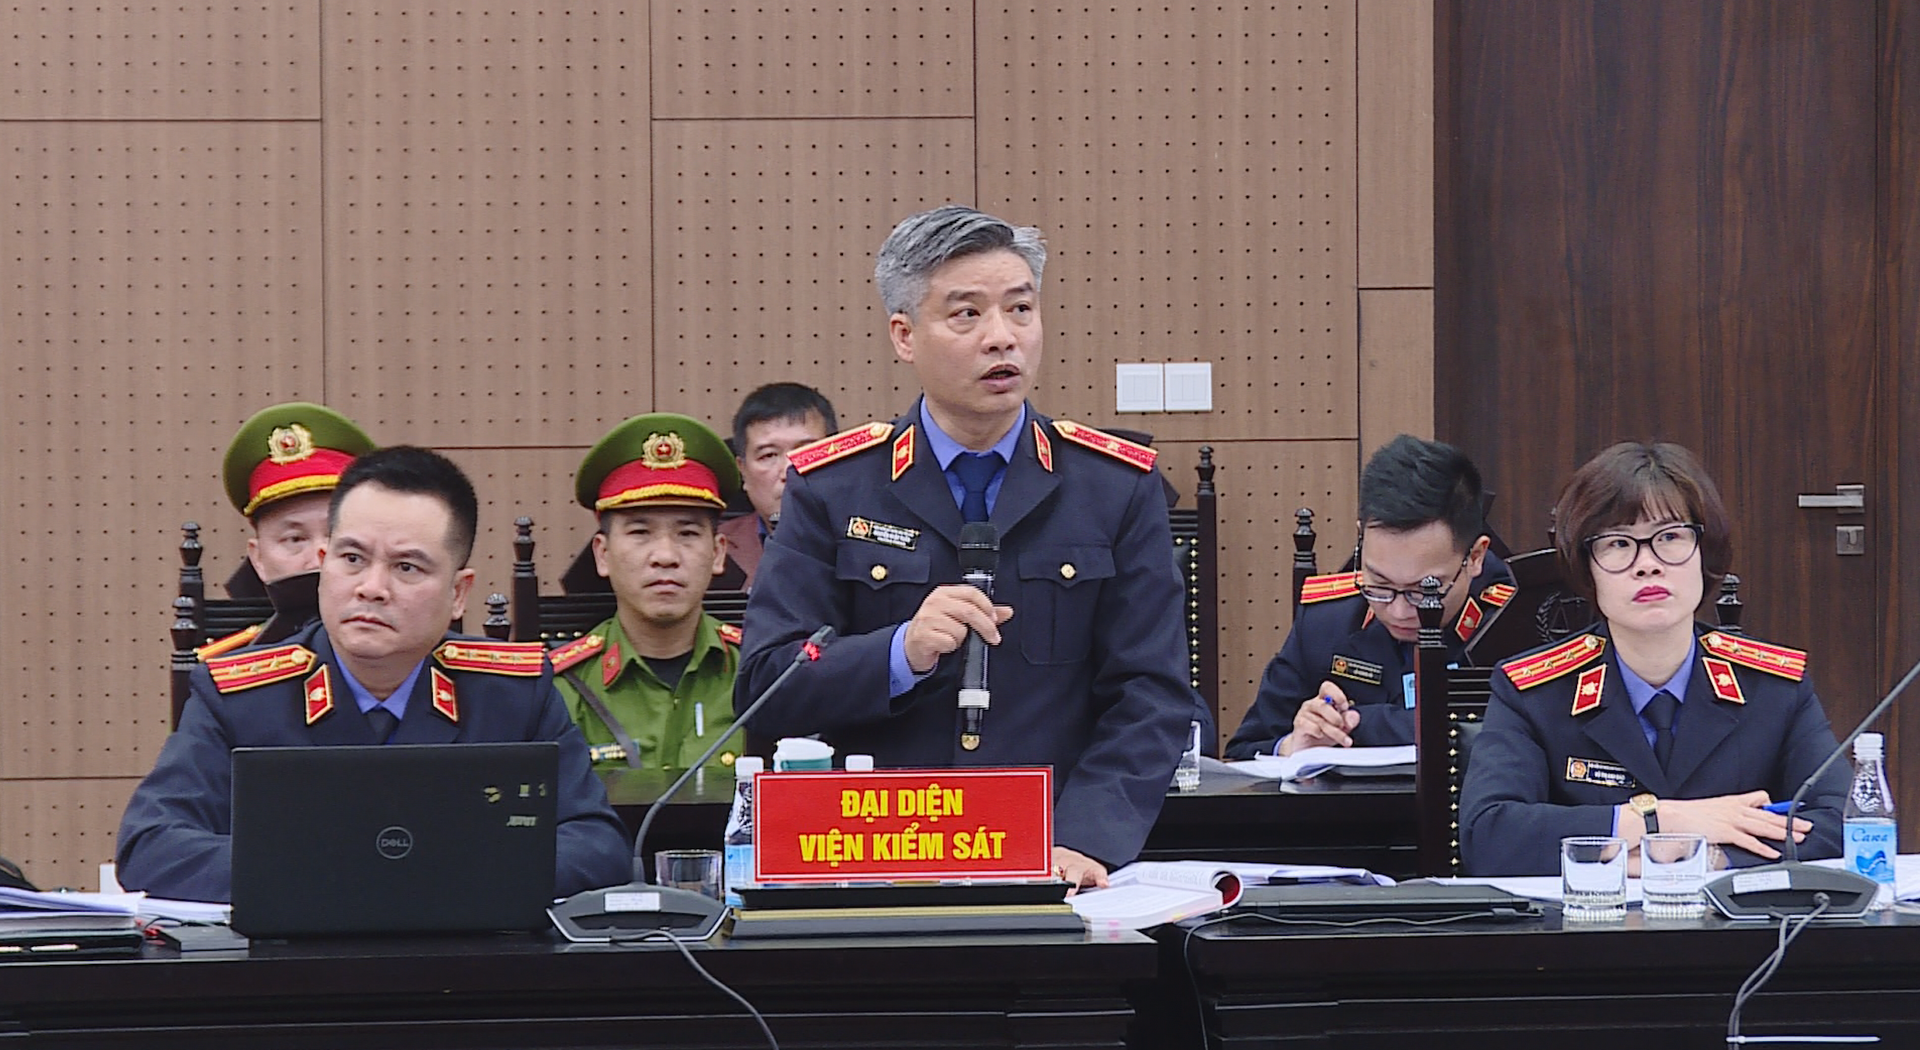 Chủ tịch Tân Hoàng Minh Đỗ Anh Dũng bị đề nghị mức án 9-10 năm tù - 2